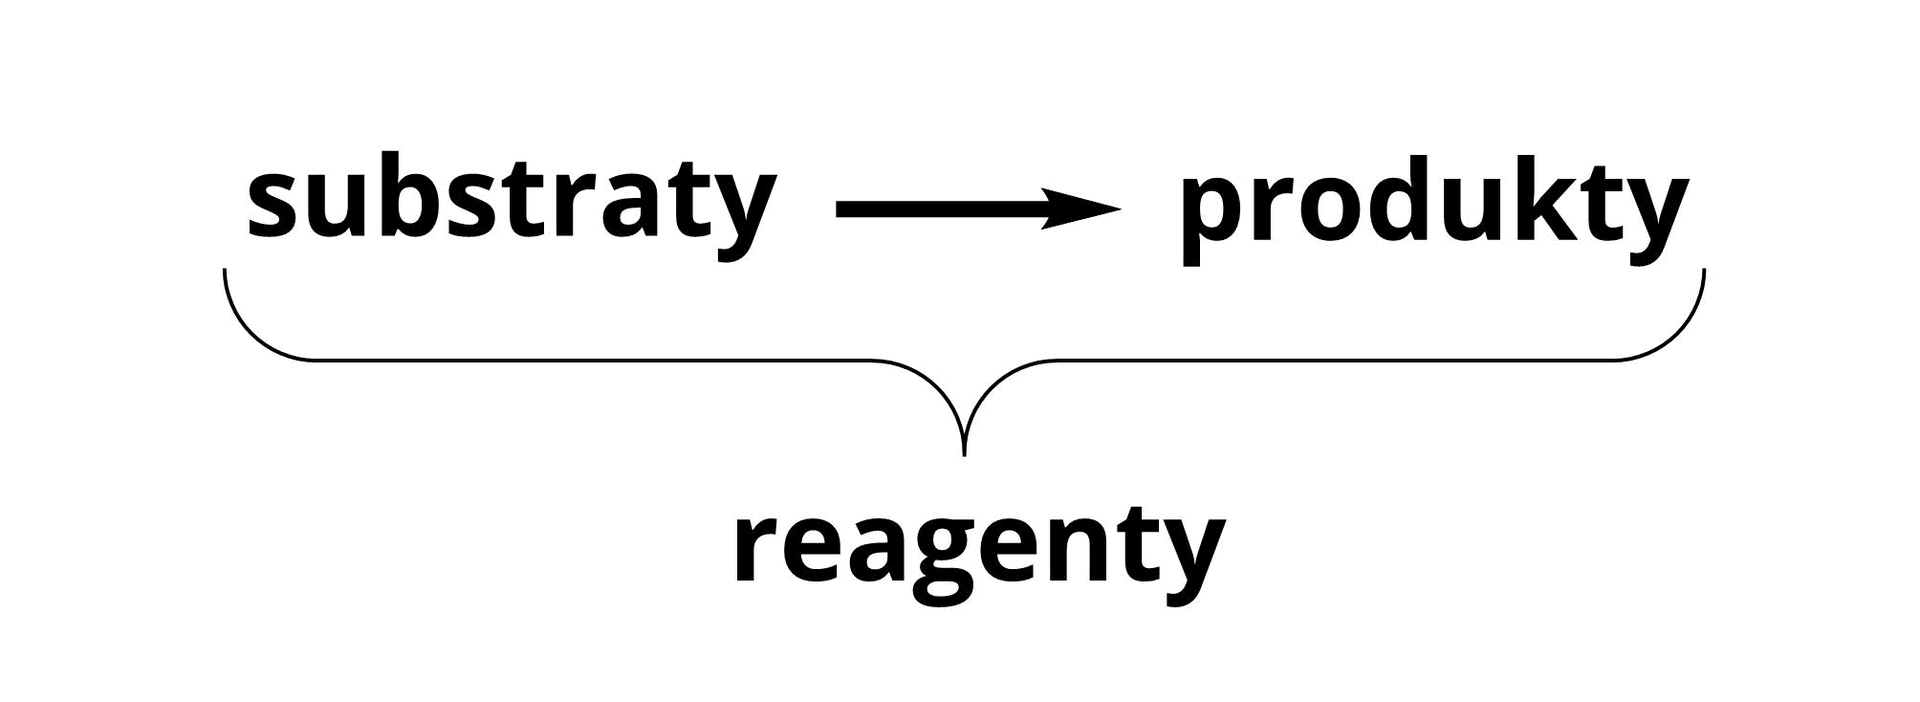 Ilustracja przedstawia najogólniejszą możliwą postać równania reakcji chemicznej. Ma ono postać: substraty, strzałka w prawo, produkty. Substraty i produkty zaznaczone są razem jako reagenty. 